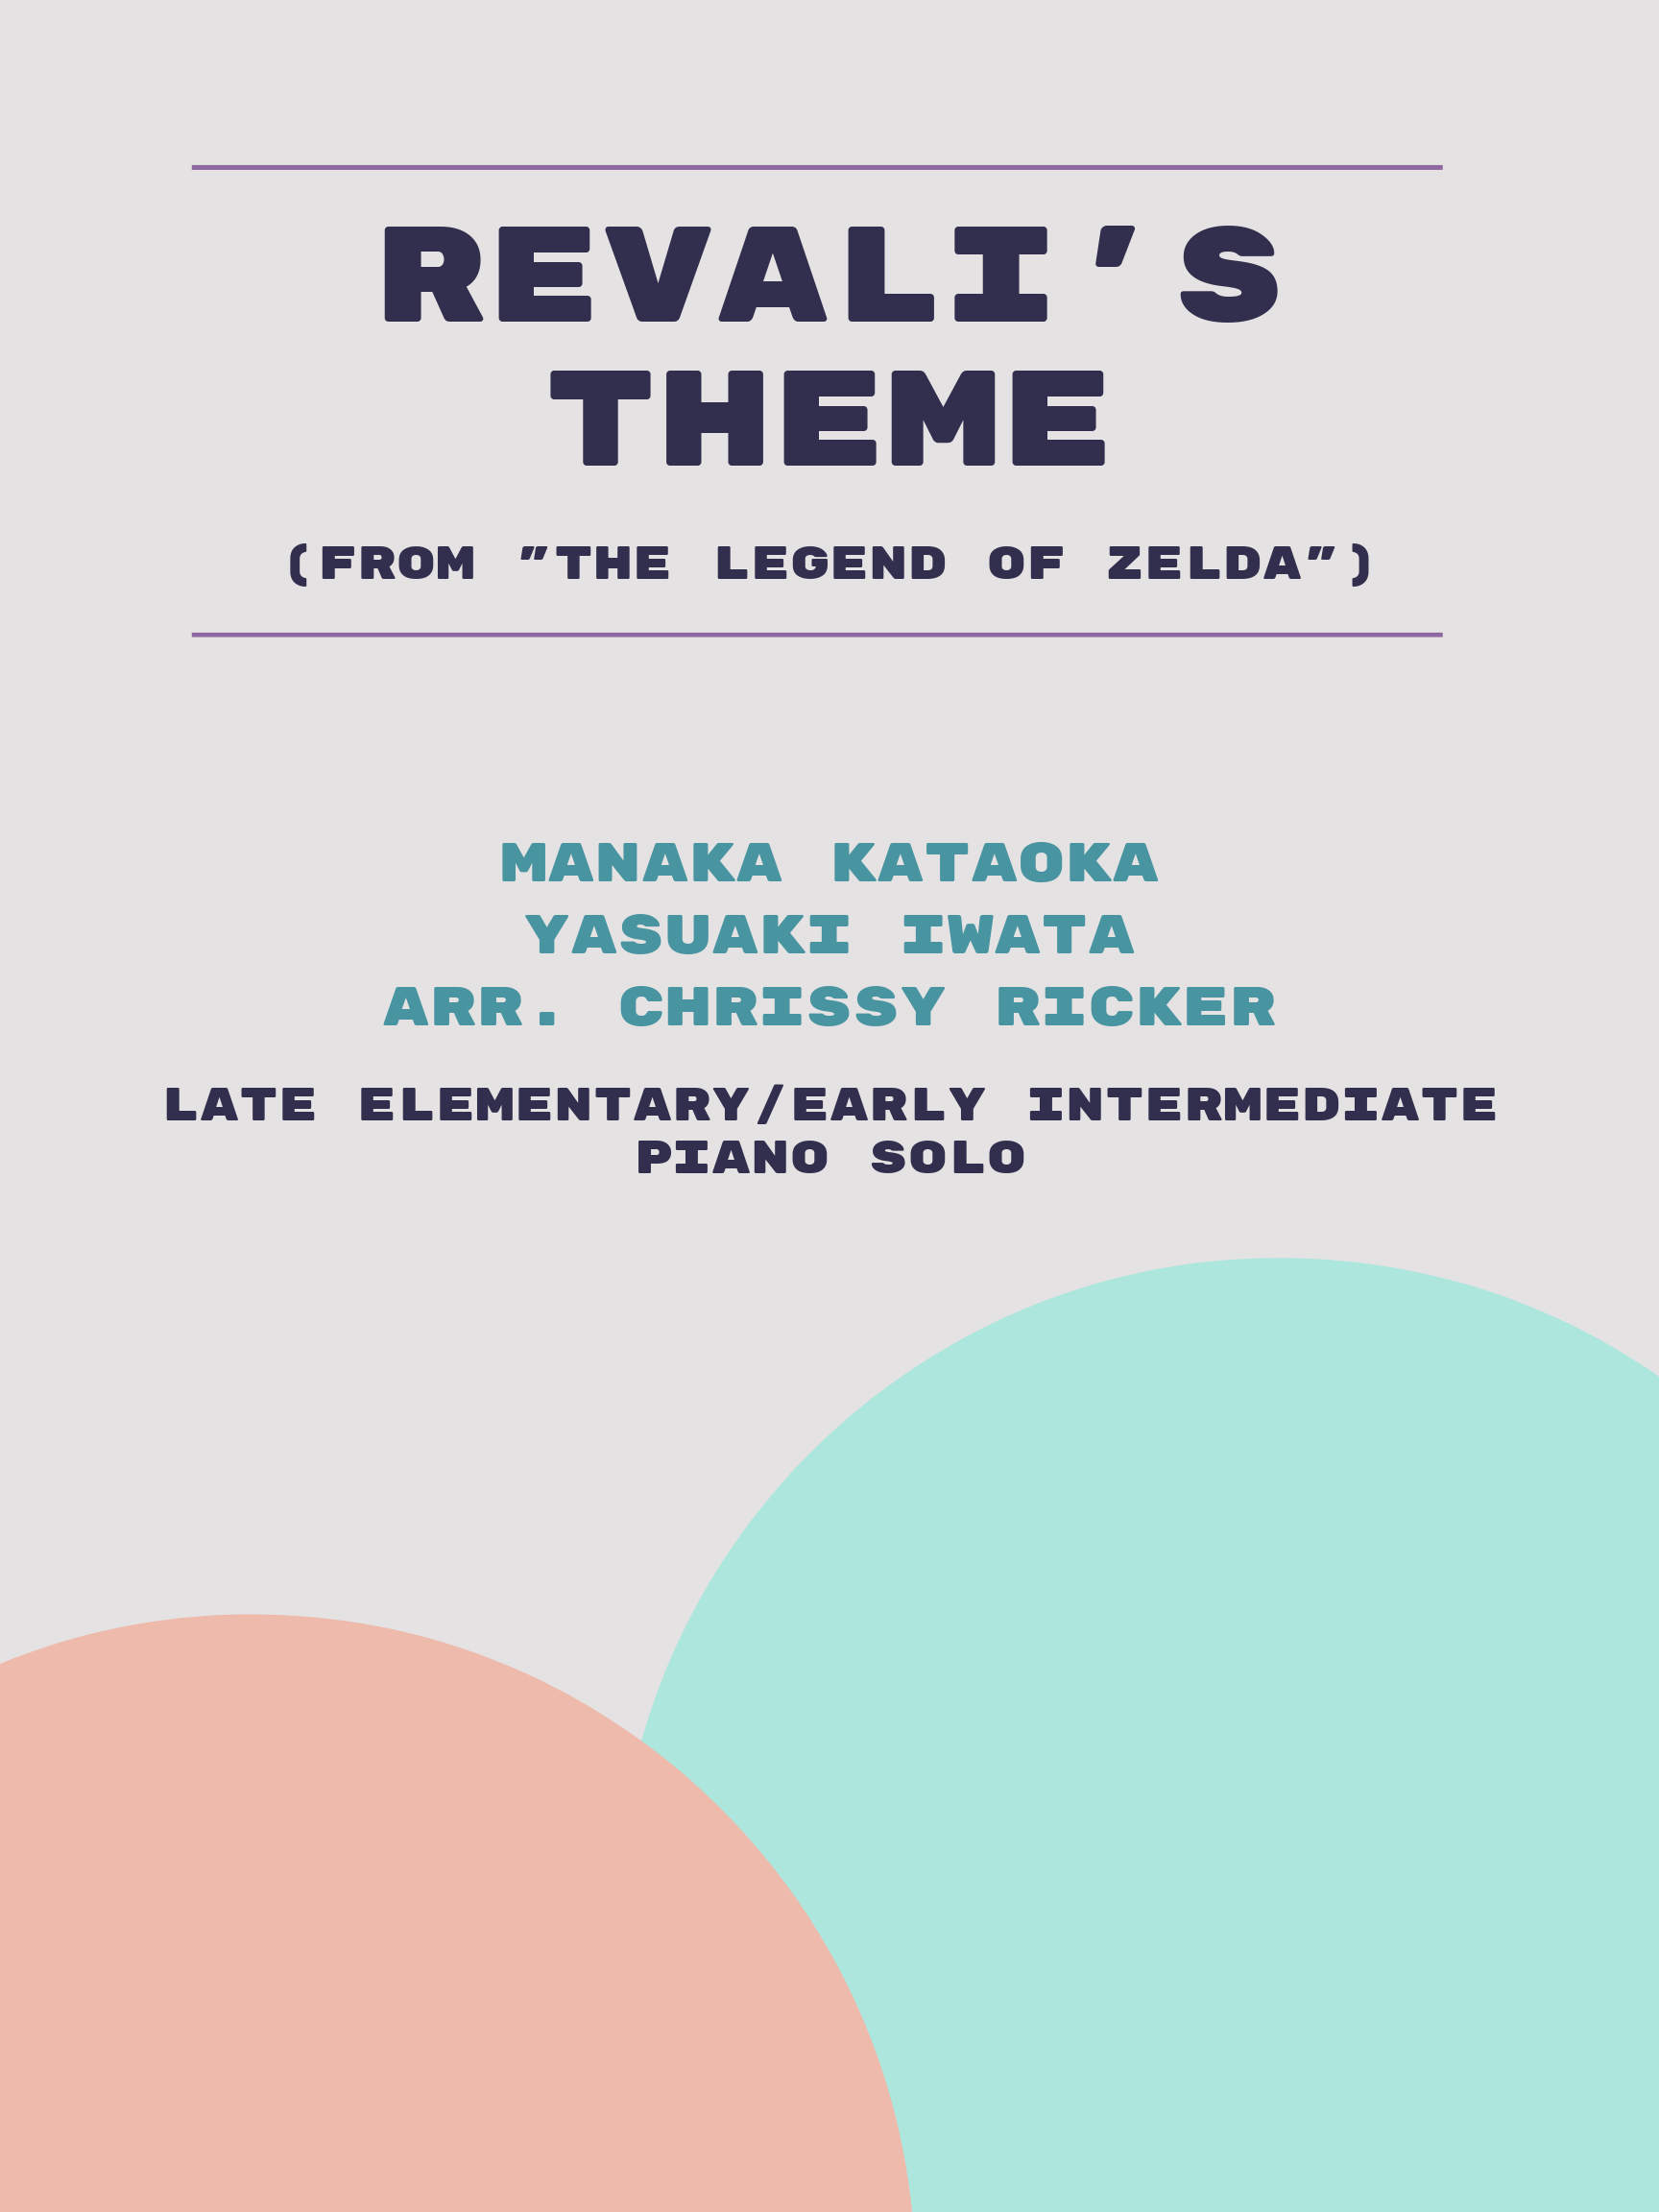 Revali's Theme Sample Page